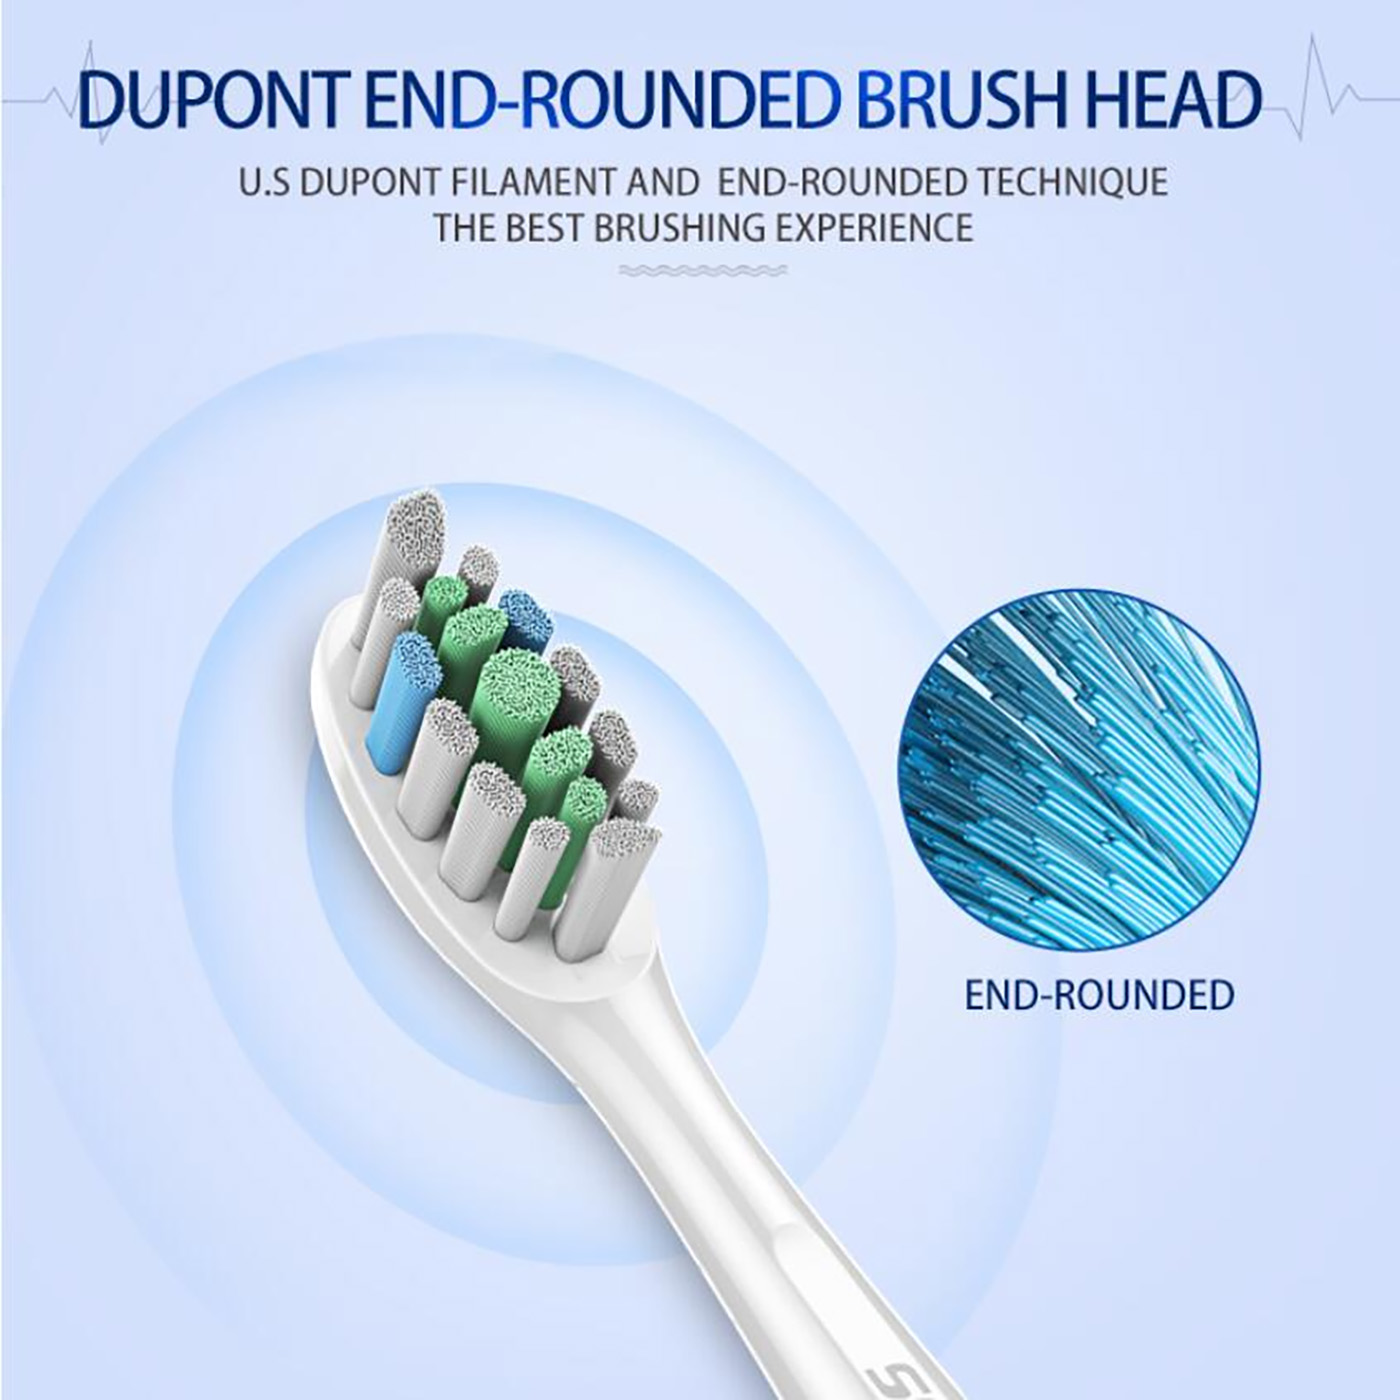 အရည်အသွေးမြင့် အားပြန်သွင်းနိုင်သော လျှပ်စစ်သွားတိုက်တံ (၃) ချောင်း၊